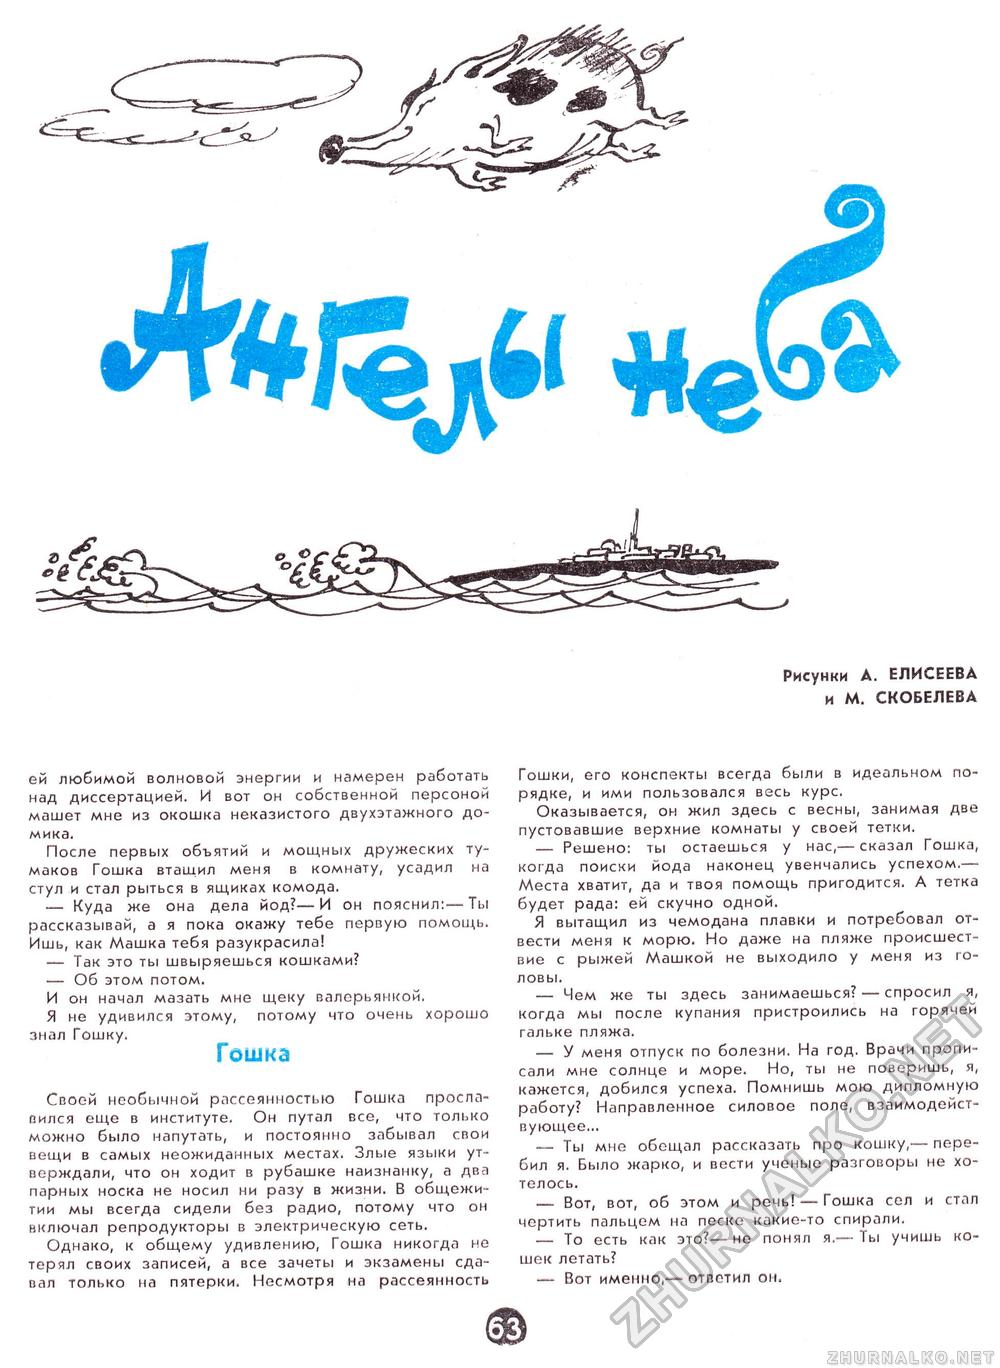  1968-02,  69